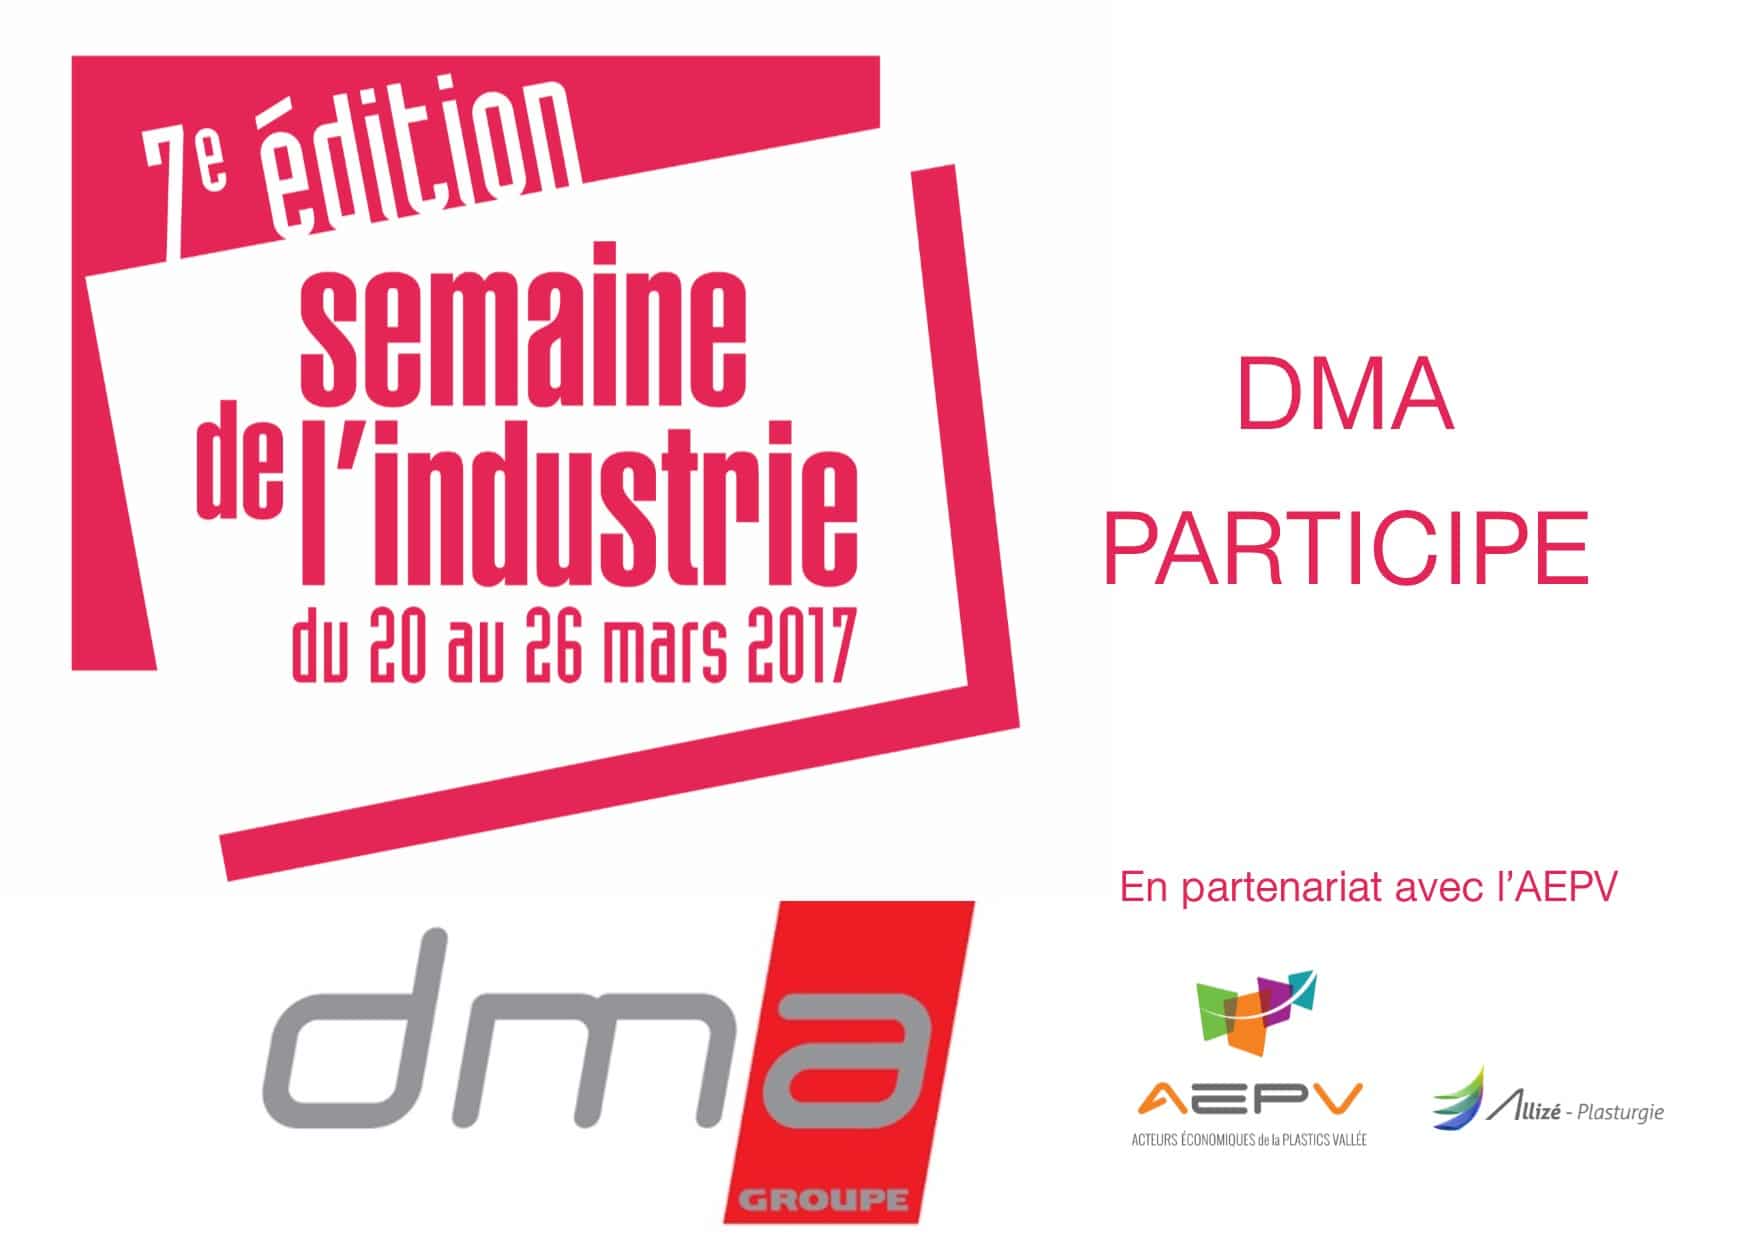 DMA present at Industry Week